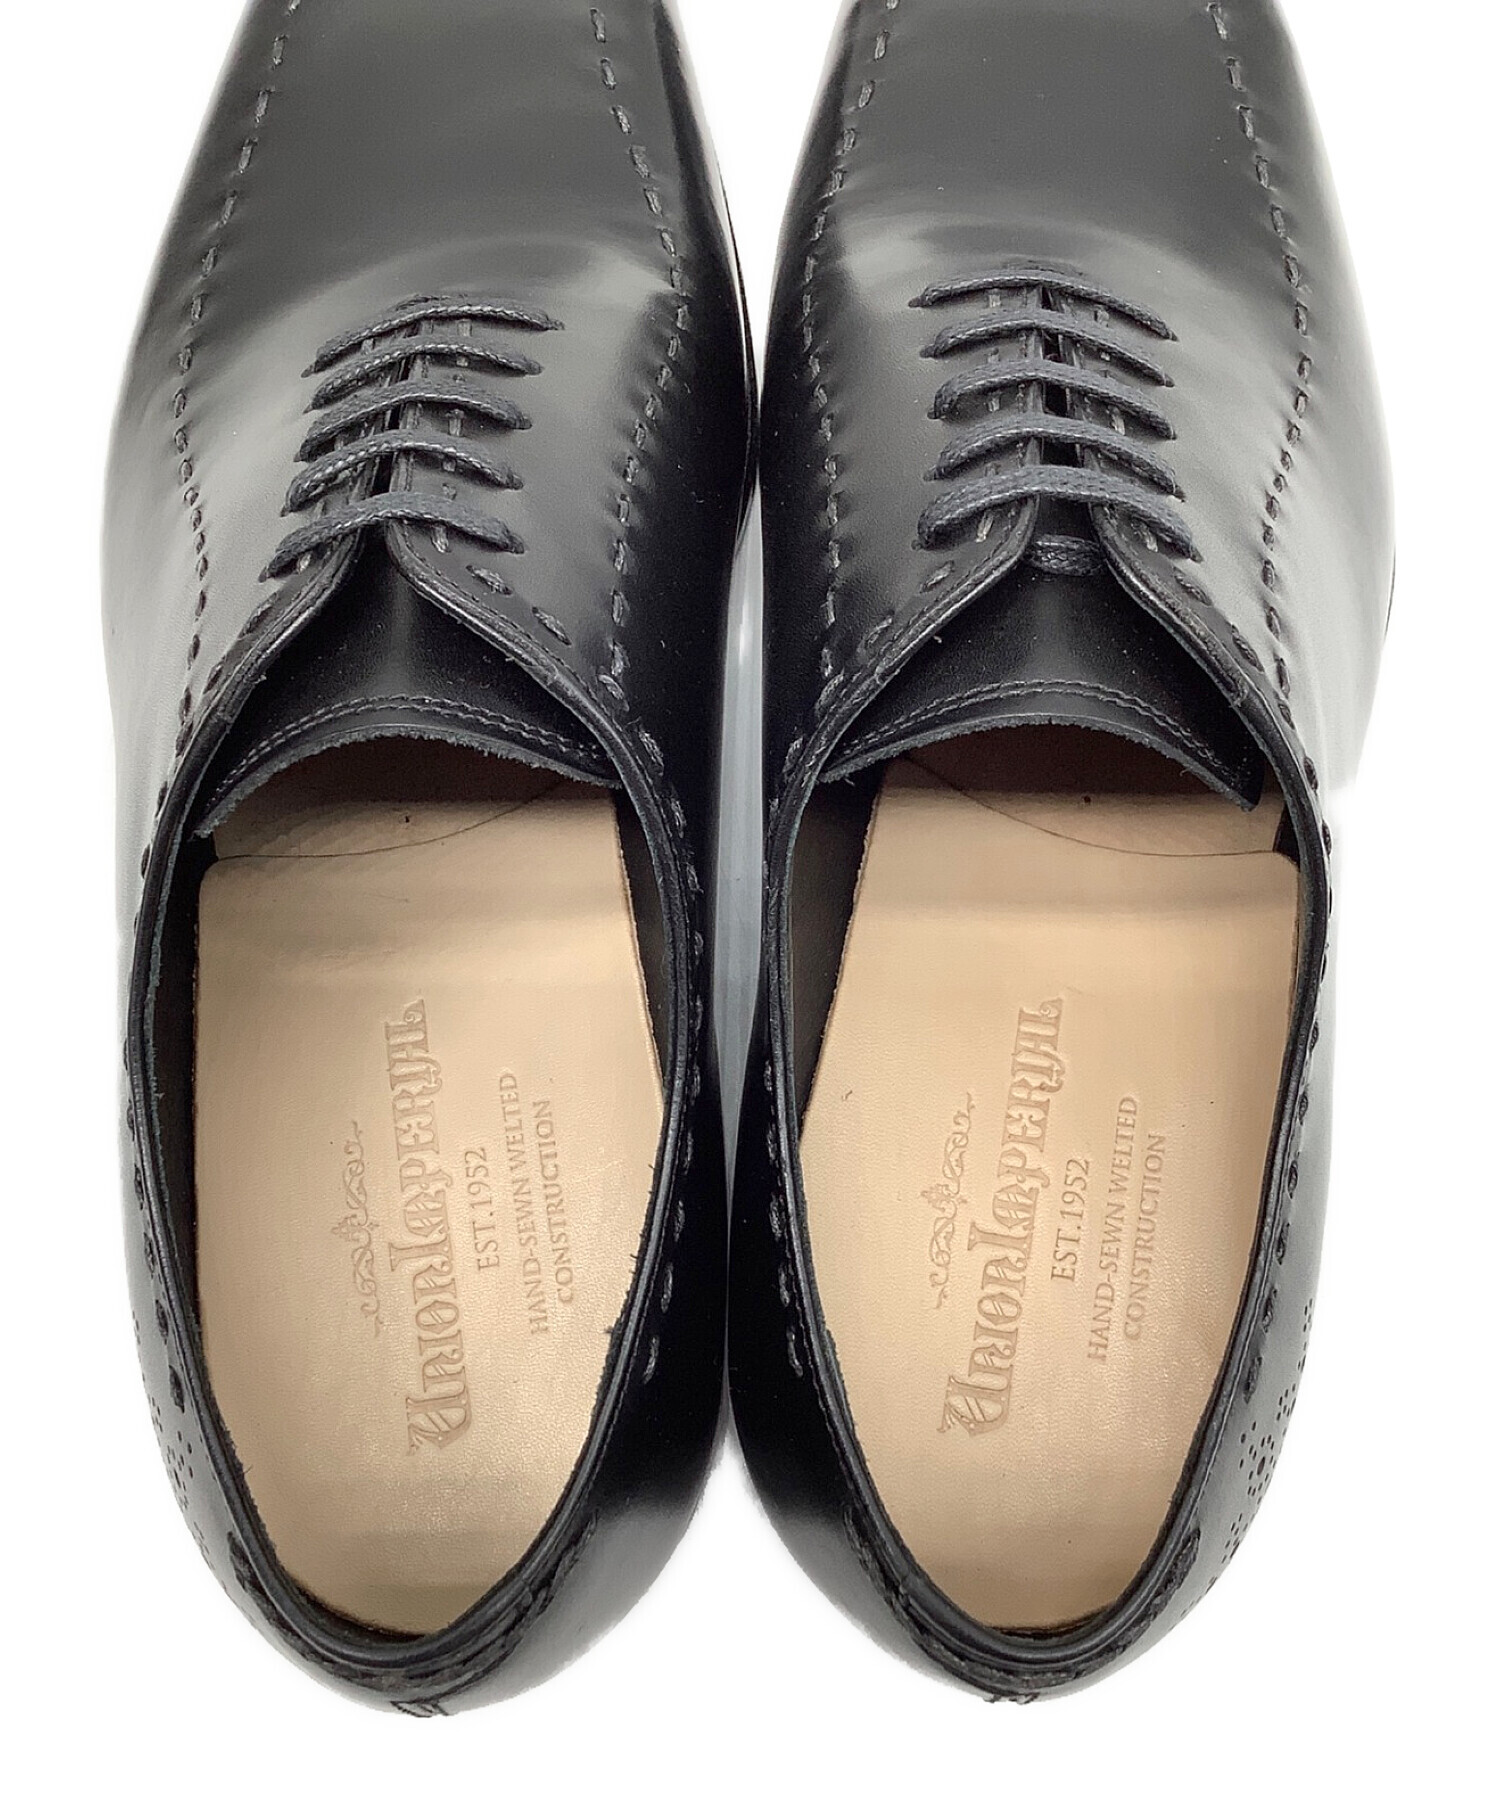 ユニオンインペリアル ブラック サイズ7 - 靴